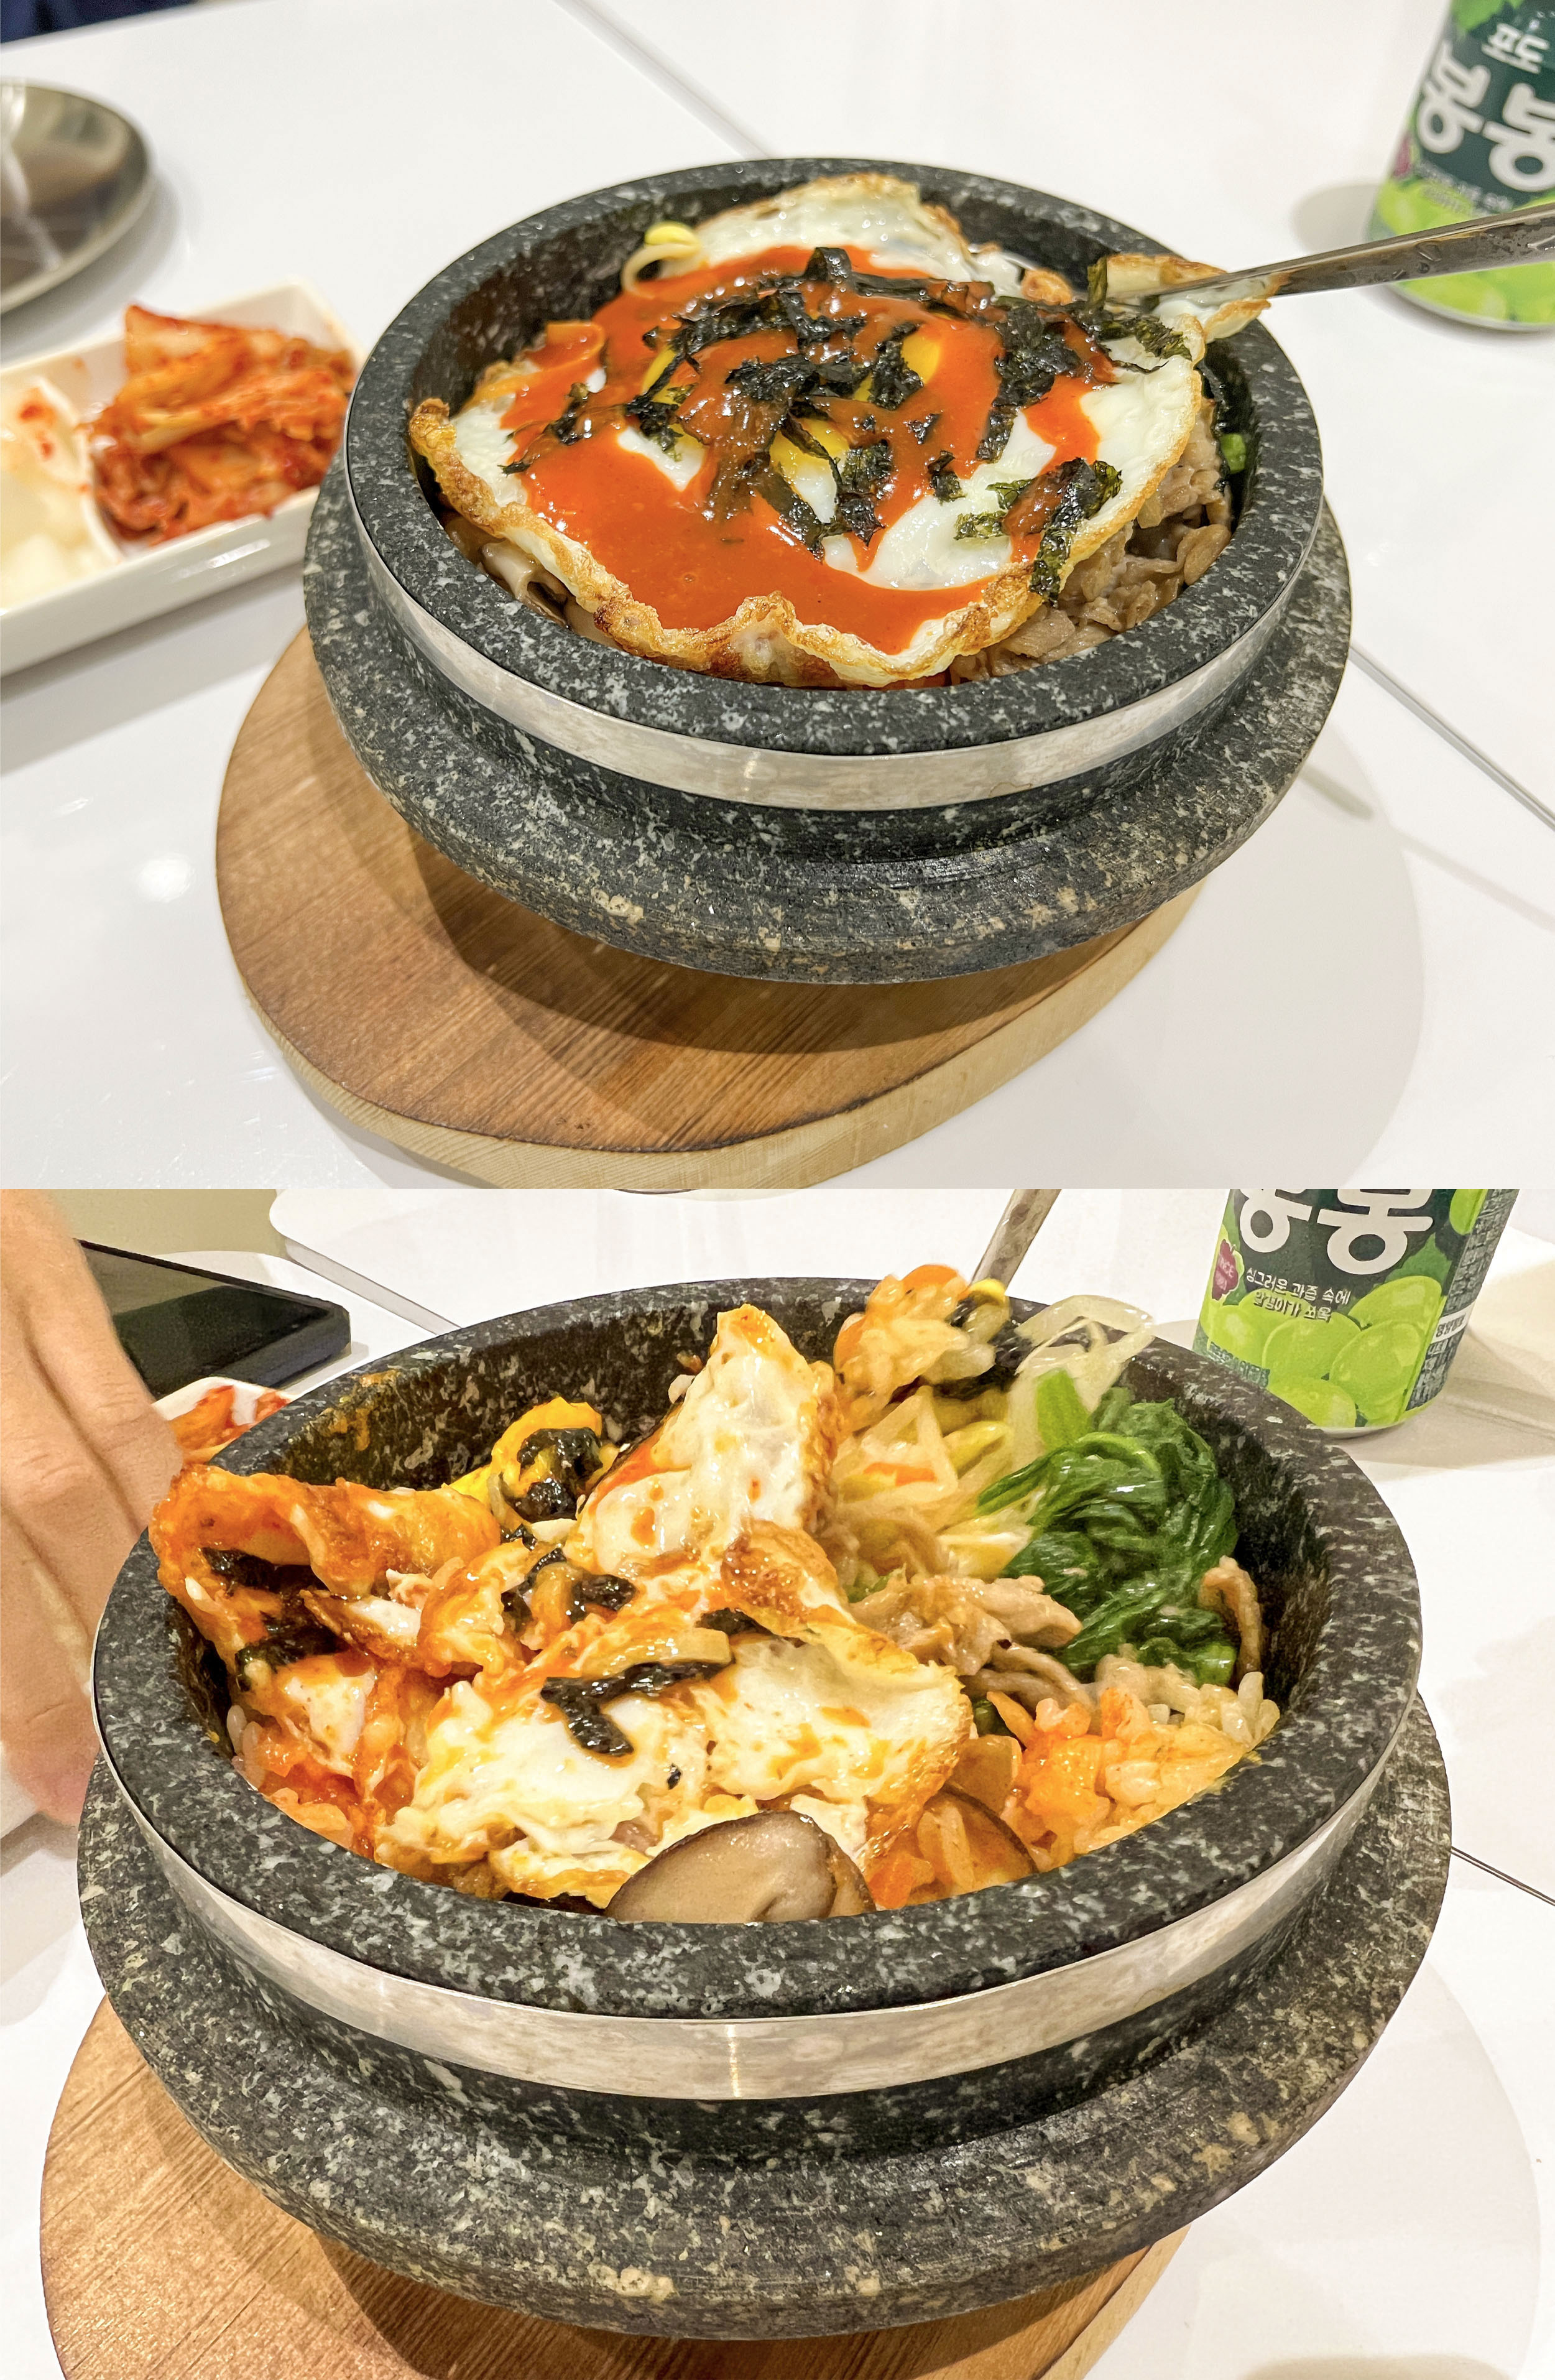 歐吧噠韓餐酒 오빠닭 한국음식점 韓式料理10.jpg